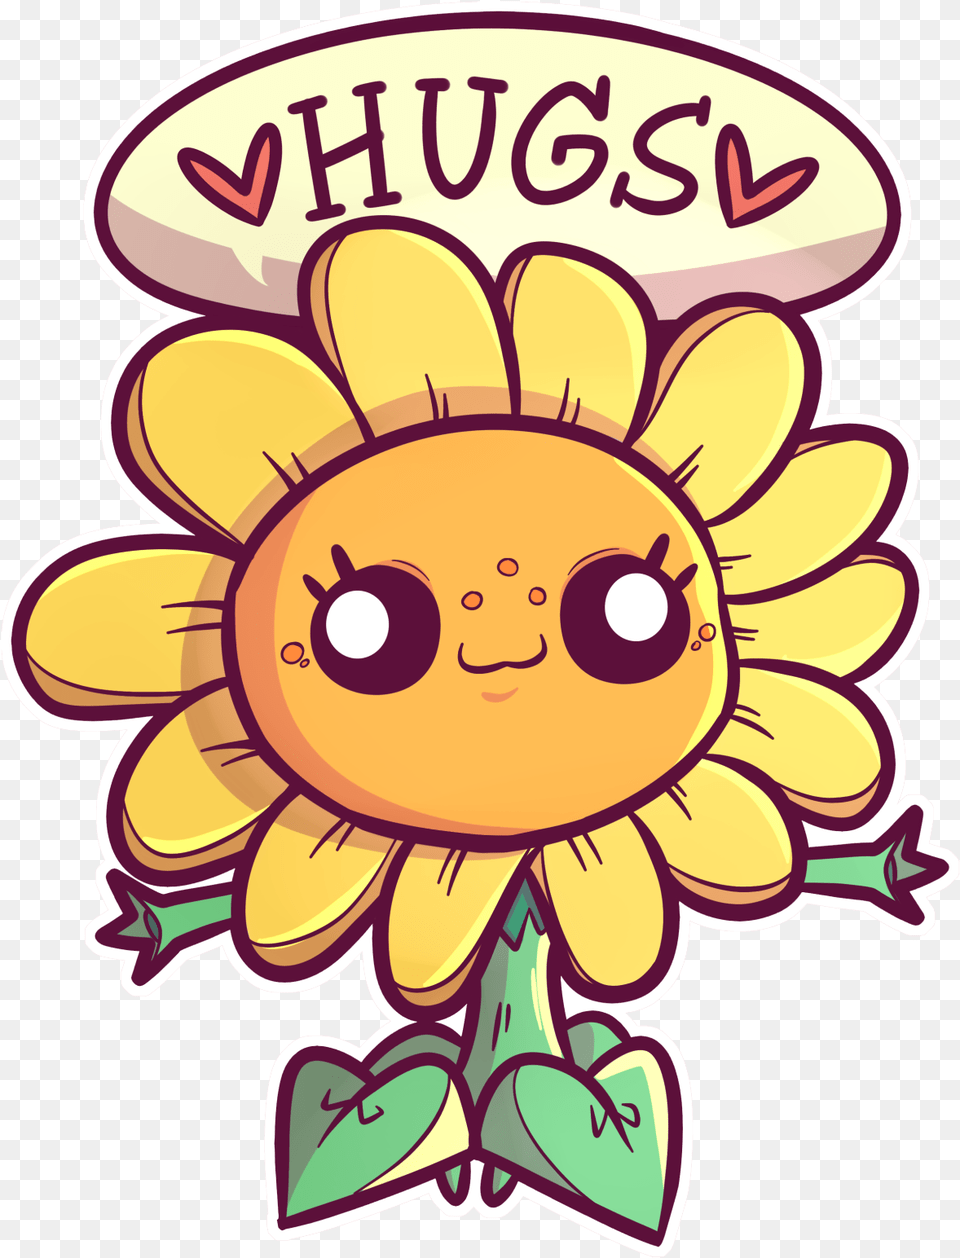 Plants Vs Zombies Sunflower Fan Arts, Plant, Daisy, Flower, Art Free Png